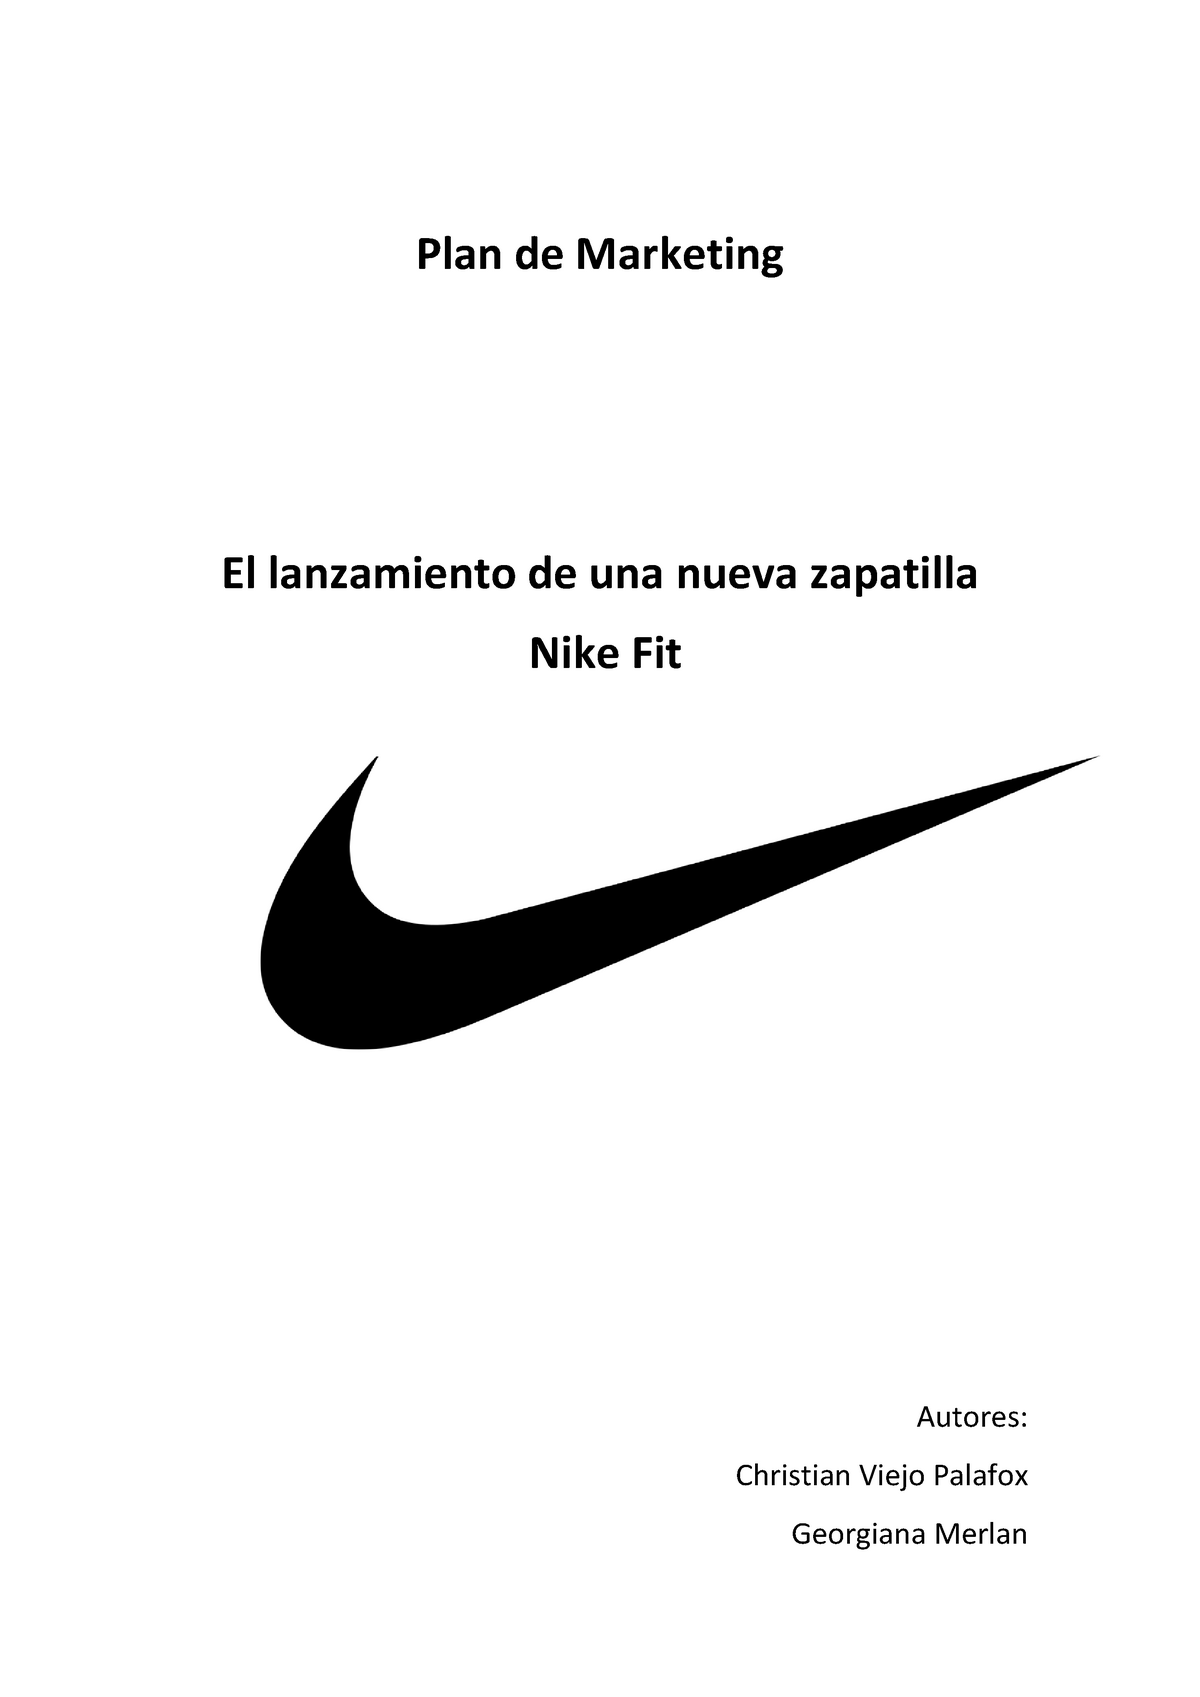 Plan de Nike Fit definitivo Plan de Marketing El lanzamiento de una nueva zapatilla Nike - StuDocu